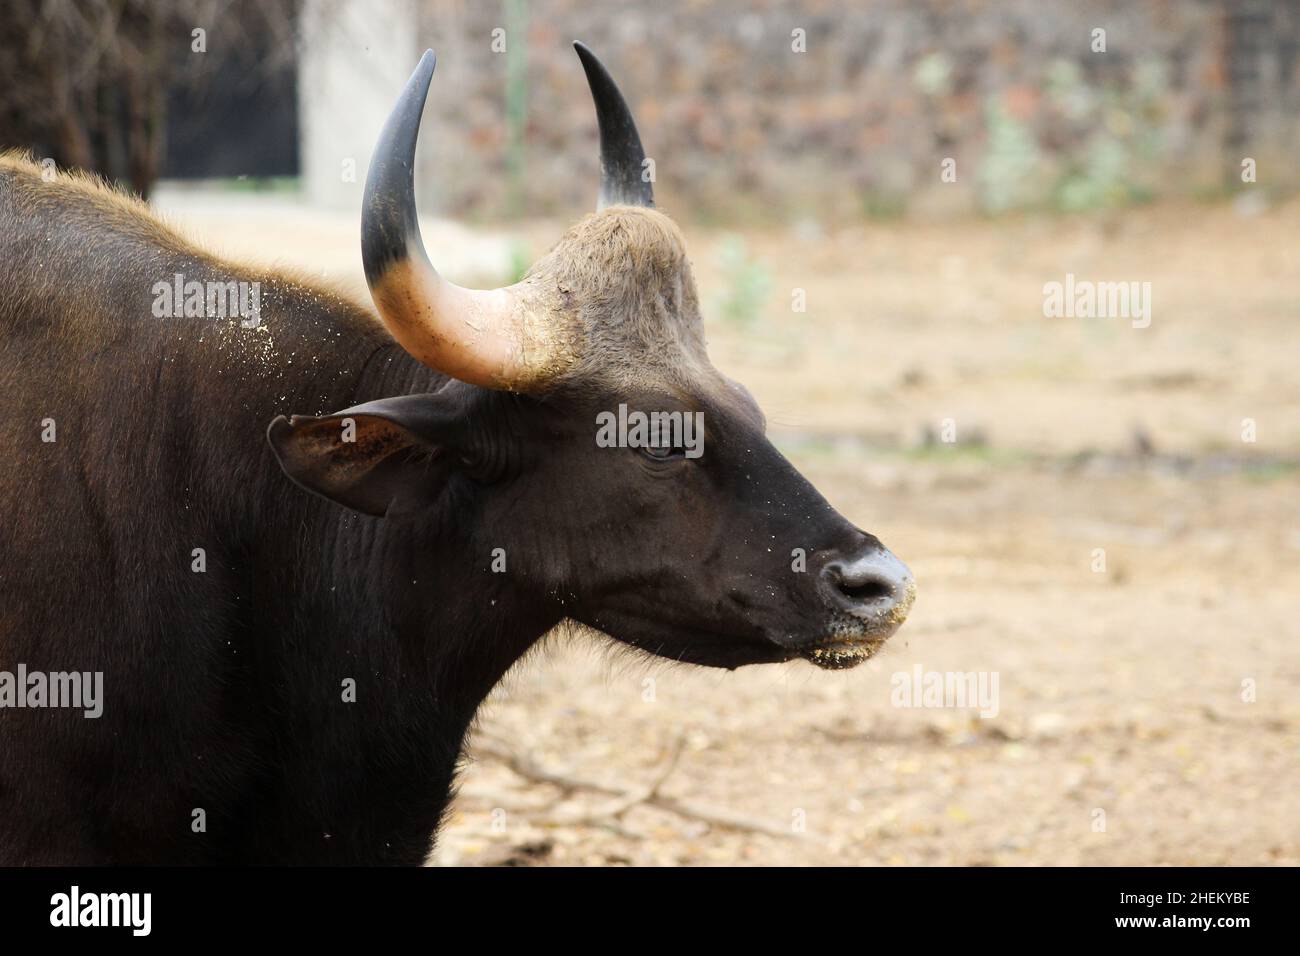 Gaur es también conocido como el bisonte indio, es un bovino nativo del sur y sudeste de Asia, y ha sido clasificado como vulnerable Foto de stock